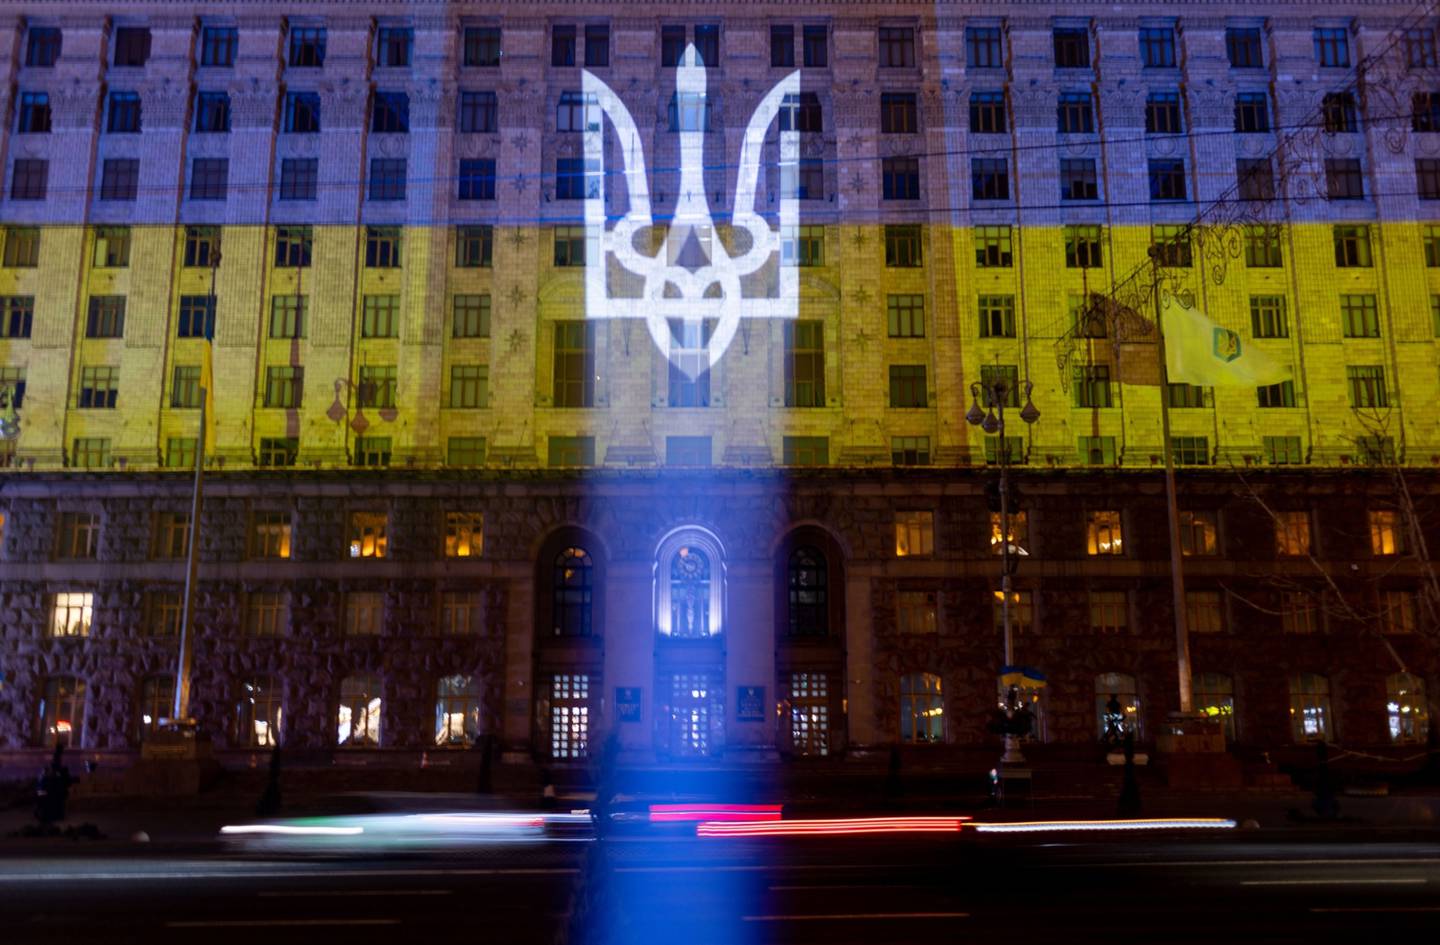 El escudo de armas y la bandera nacional de Ucrania se proyectan en un edificio durante un "Día de la Unidad" en Kiev, Ucrania, el miércoles 16 de febrero de 2022.